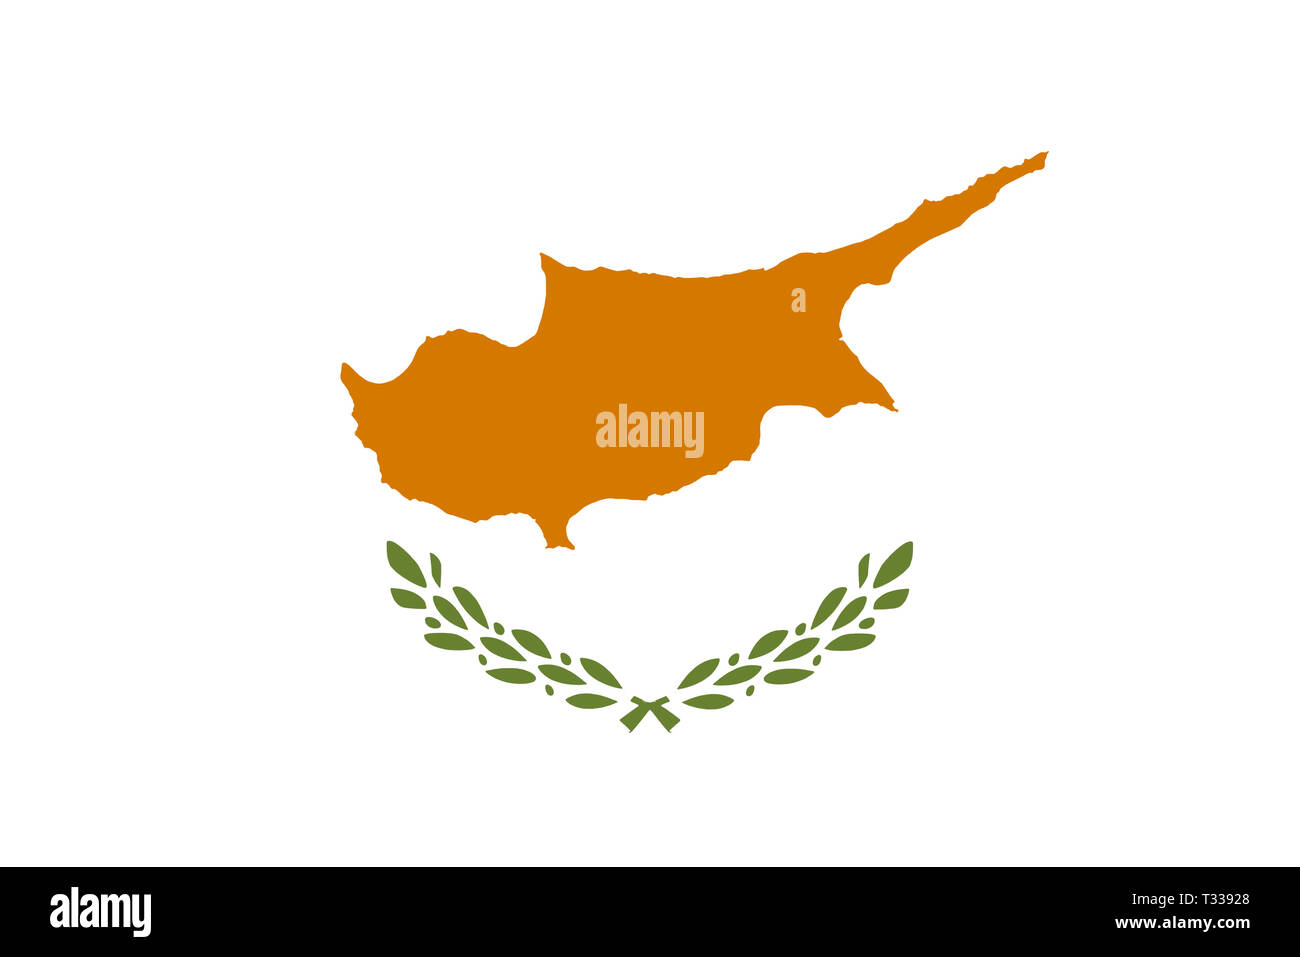 Bandiera cipriota un'isola greca e turca in Europa Foto Stock